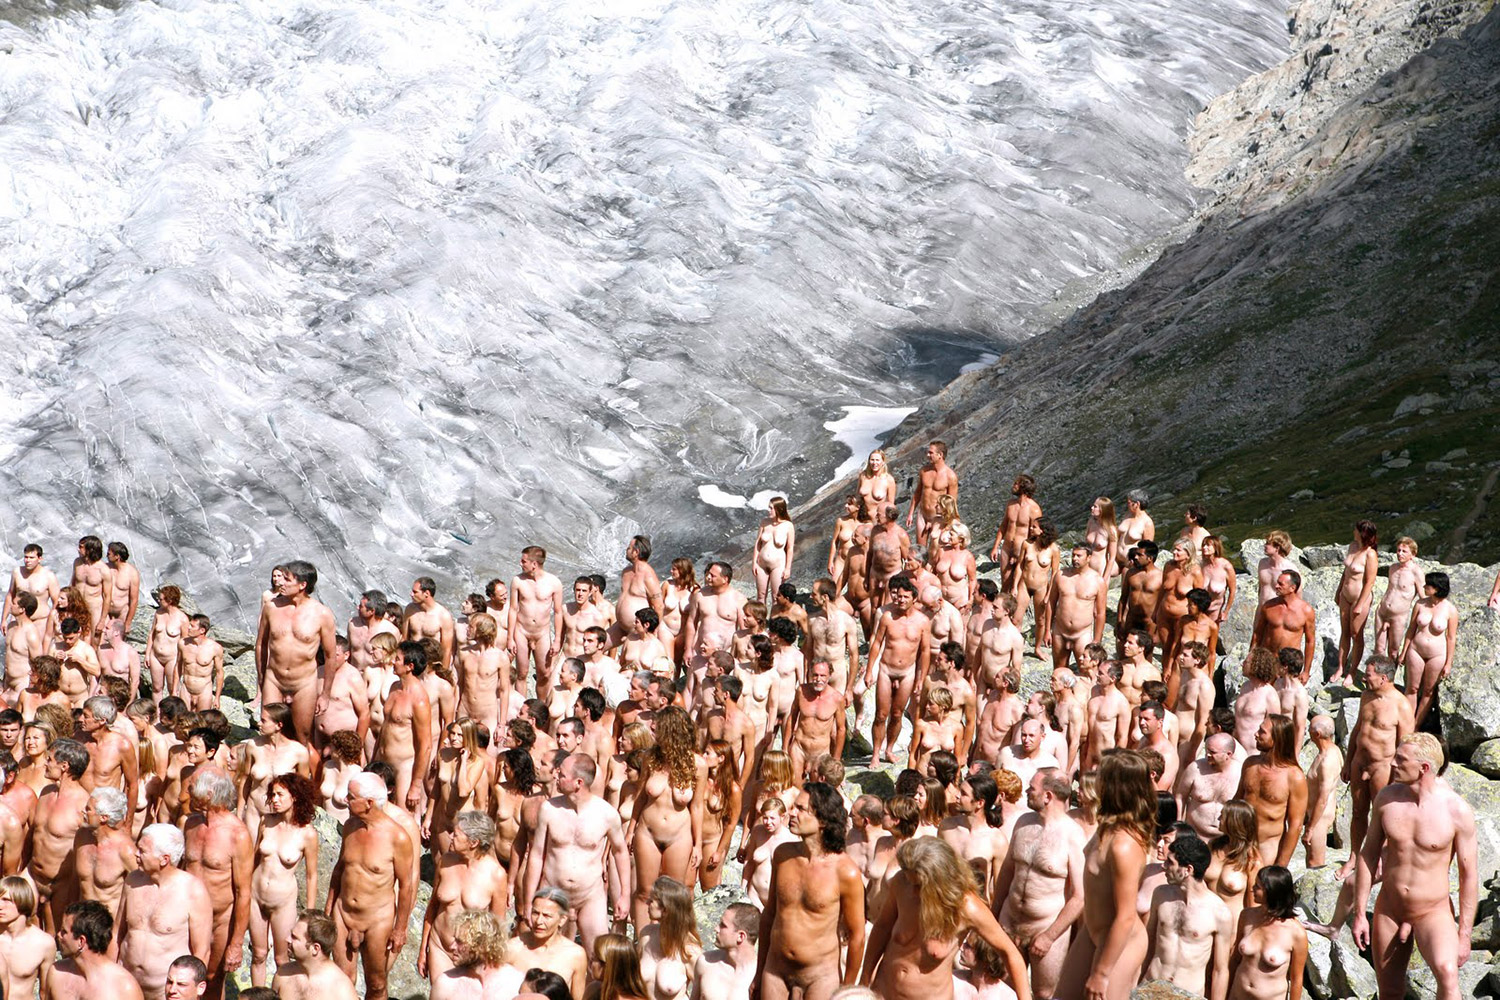 Nude crowds